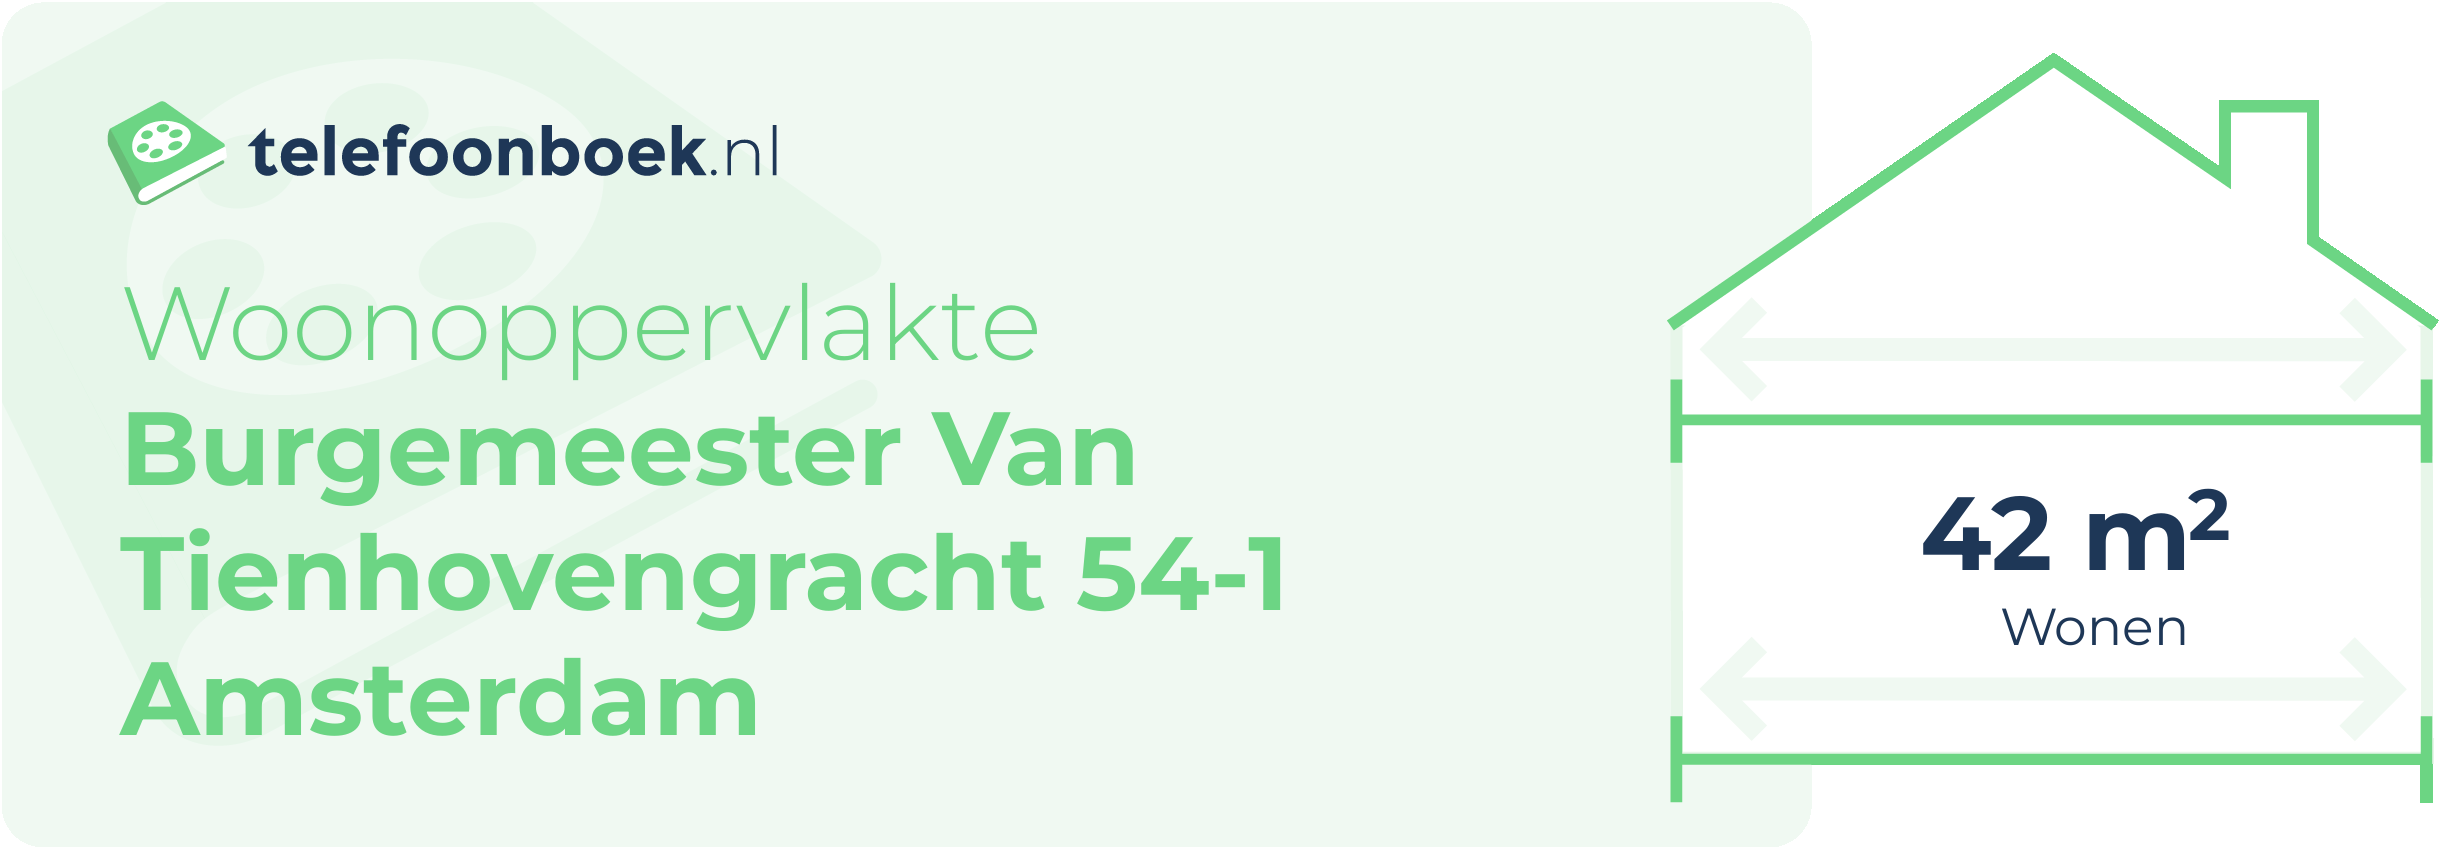 Woonoppervlakte Burgemeester Van Tienhovengracht 54-1 Amsterdam